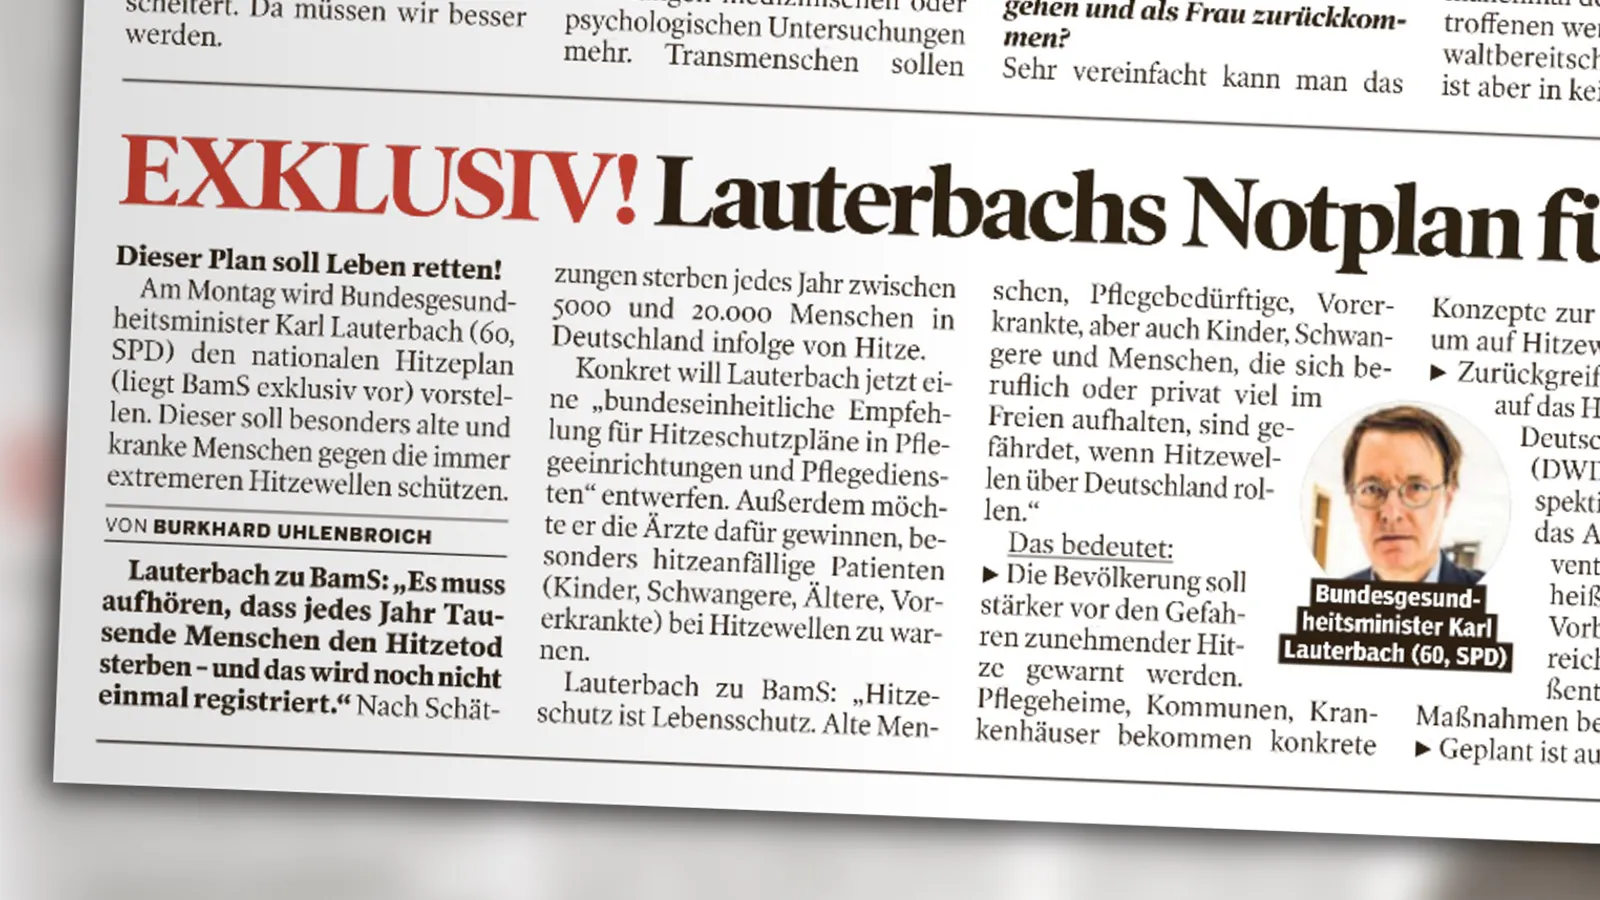 Ausriss aus der „Bild am Sonntag“. Artikel mit der Überschrift: „EXKLUSIV! Lauterbachs Notplan ...“